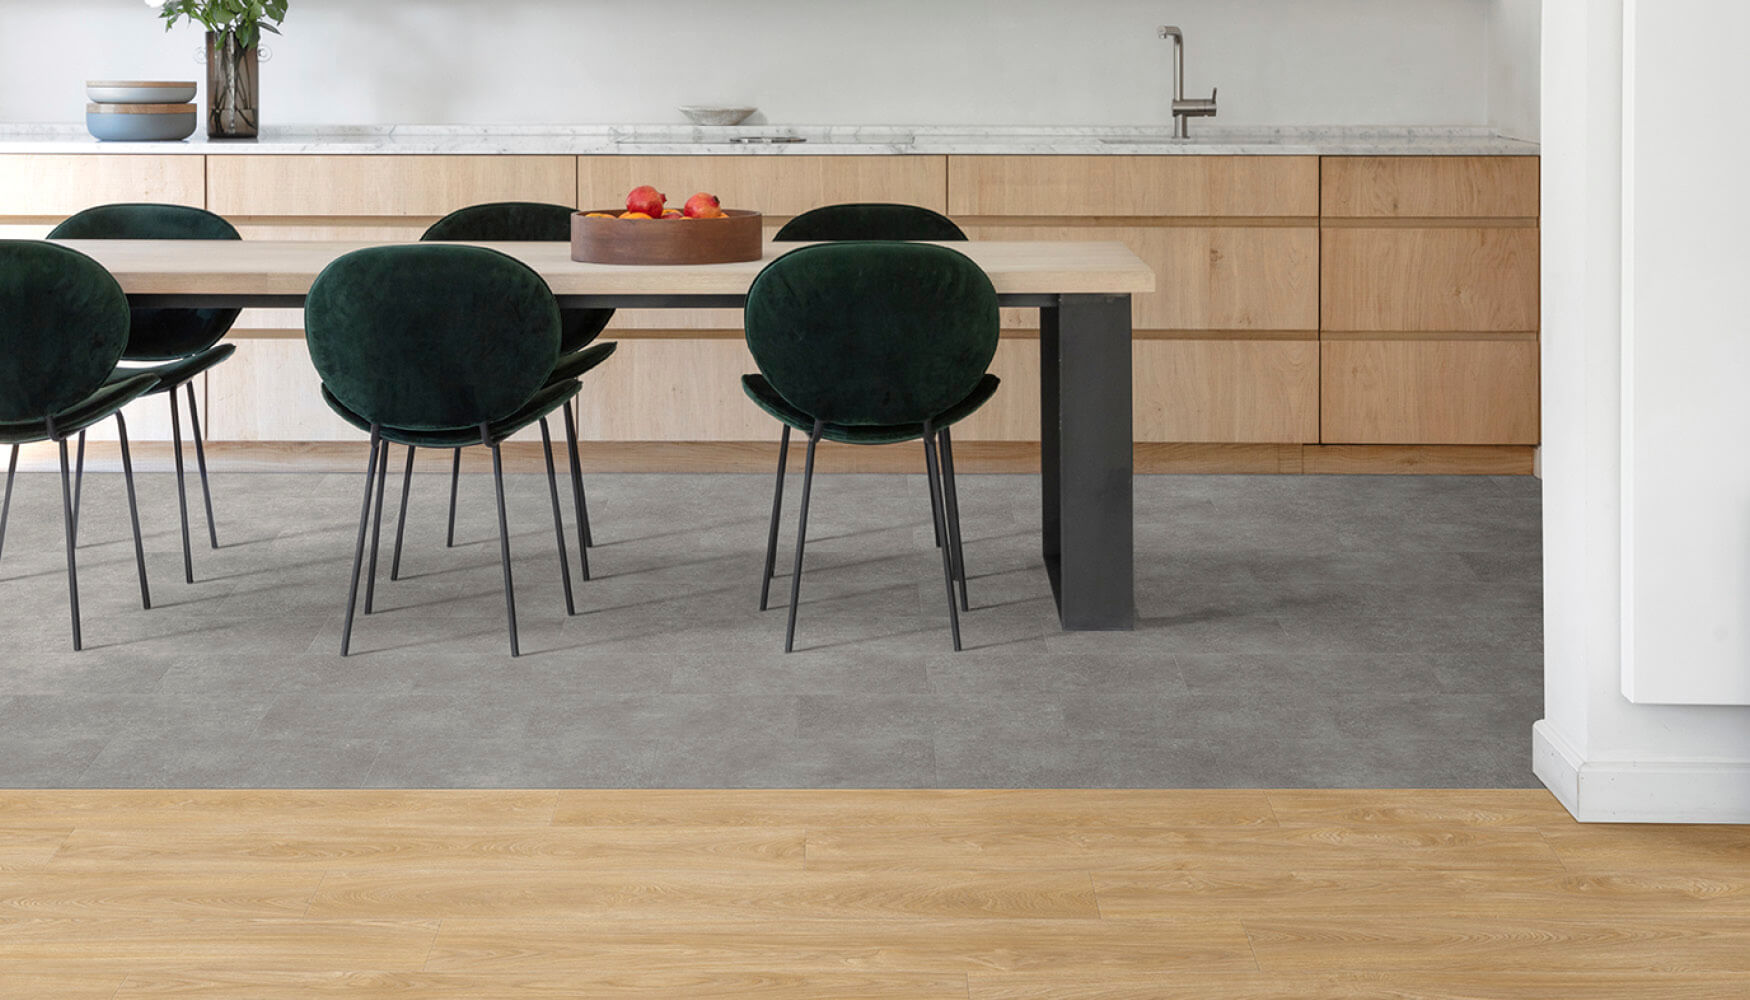 LVT vloeren met houtdesign in de woonkamer en LVT vloeren met steendesign in de keuken. Naadloze overgang.